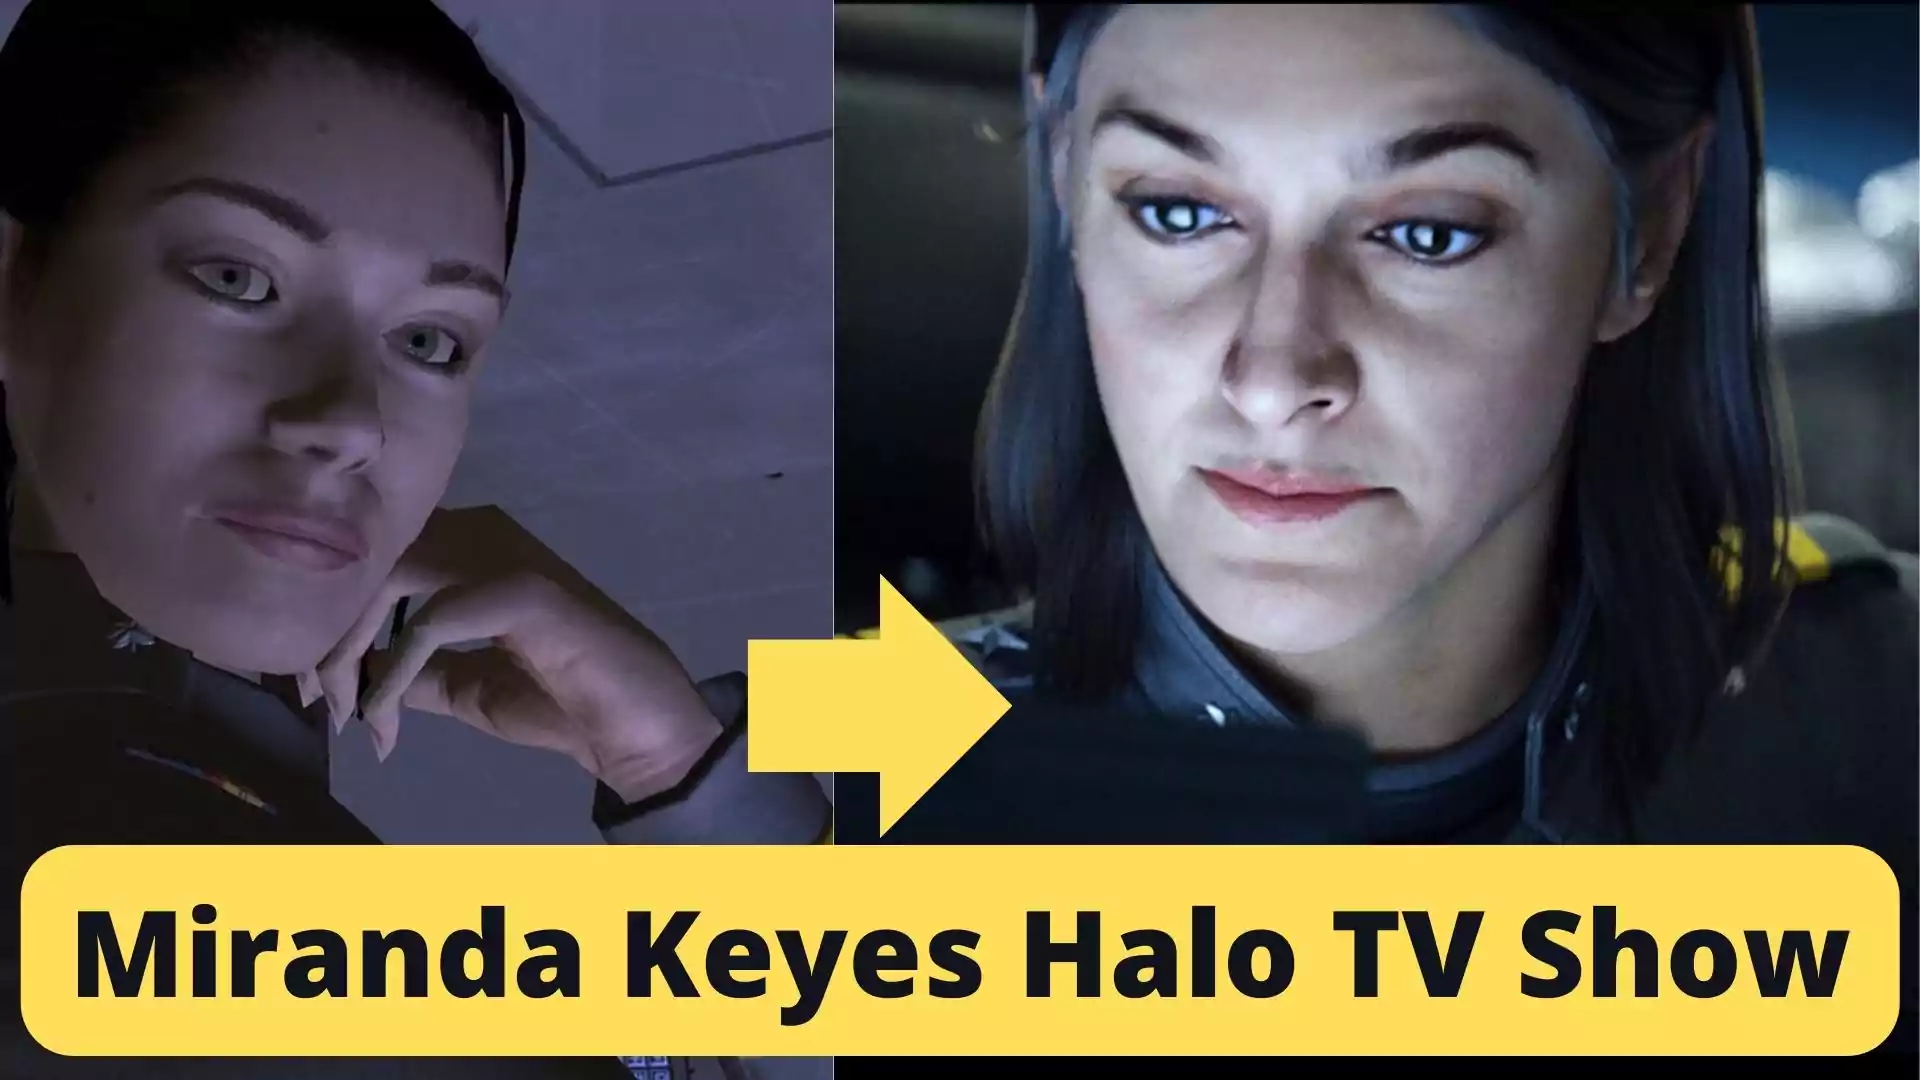 Miranda Keyes Halo TV Show, Miranda Keyes from Halo TV Show, Olive Gray as Miranda Keyes, Father of Miranda Keyes, Jacob Keyes.